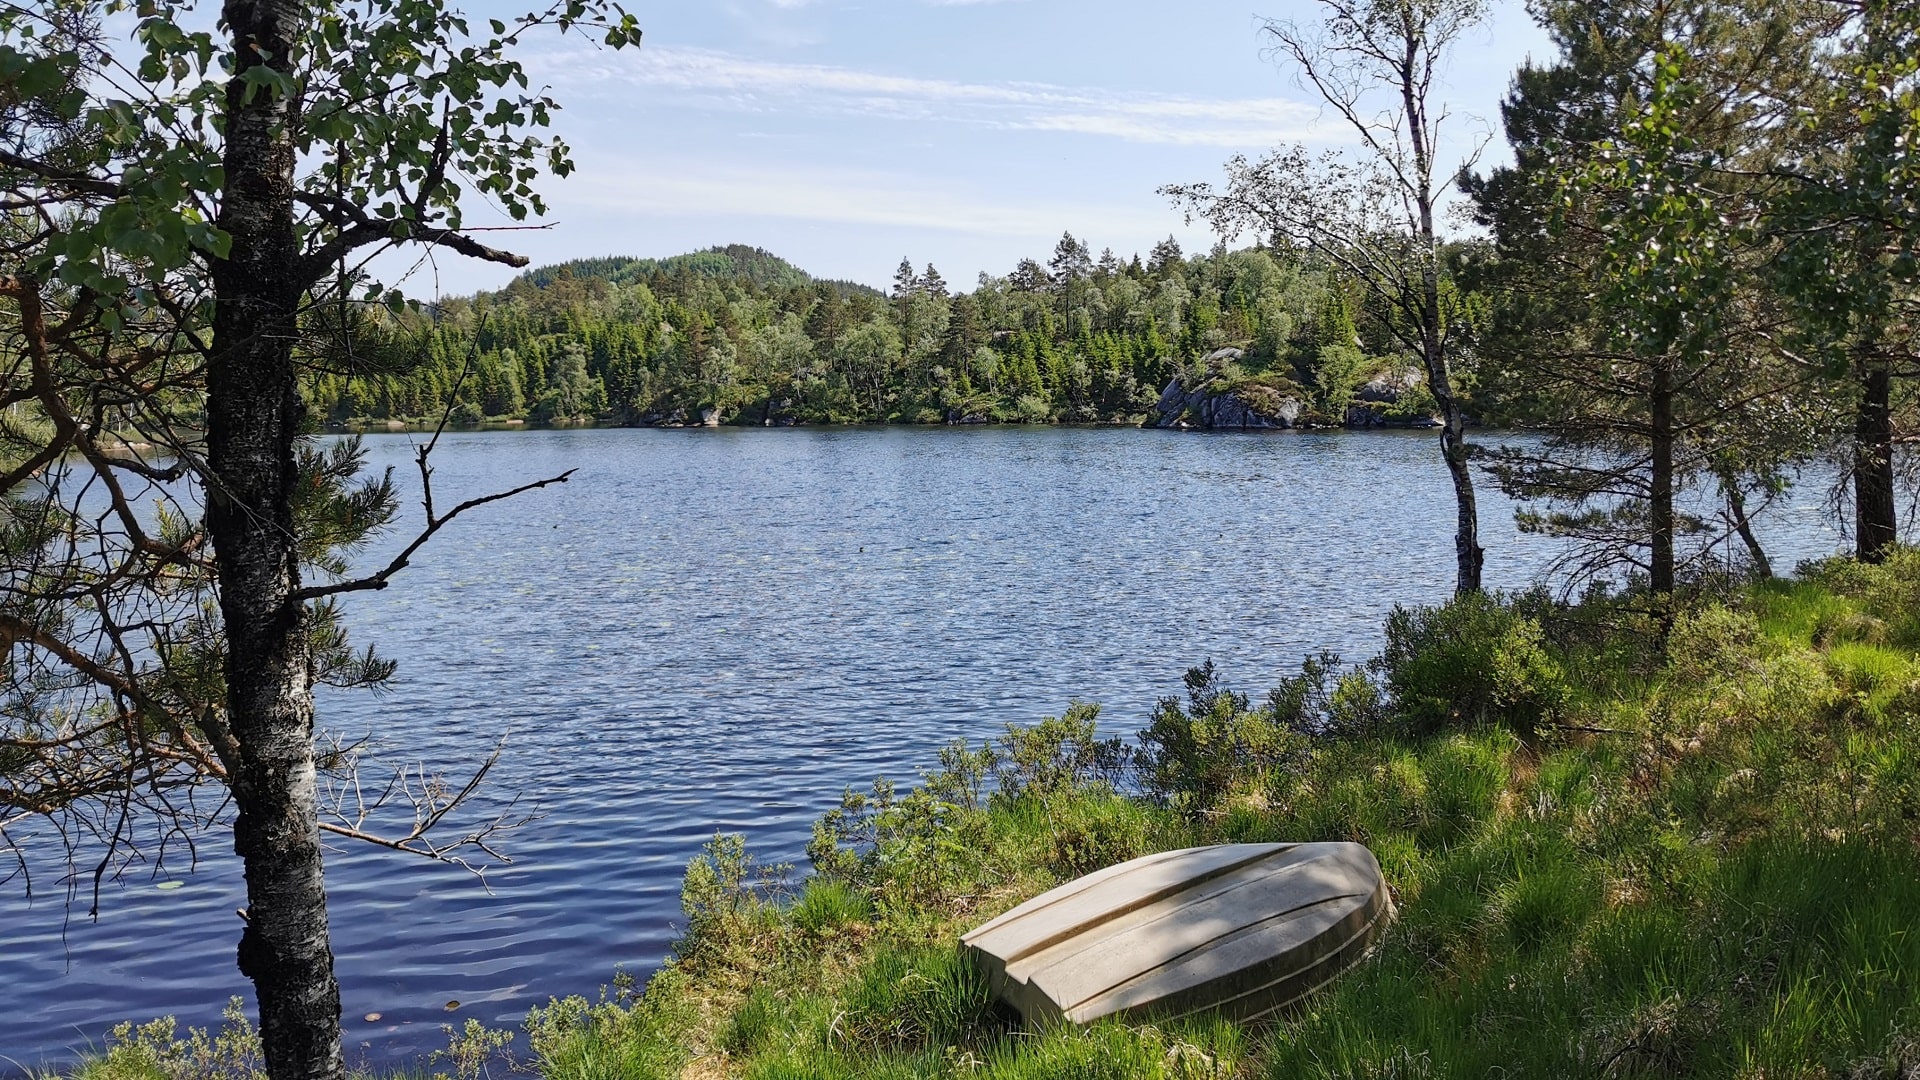 Das Ufer des Sees mit einer Kiefer auf der linken Seite und einem kleinen Ruderboot im Gras. Strahlend blauer Himmel und Baumreihen entlang des gegenüberliegenden Ufers.